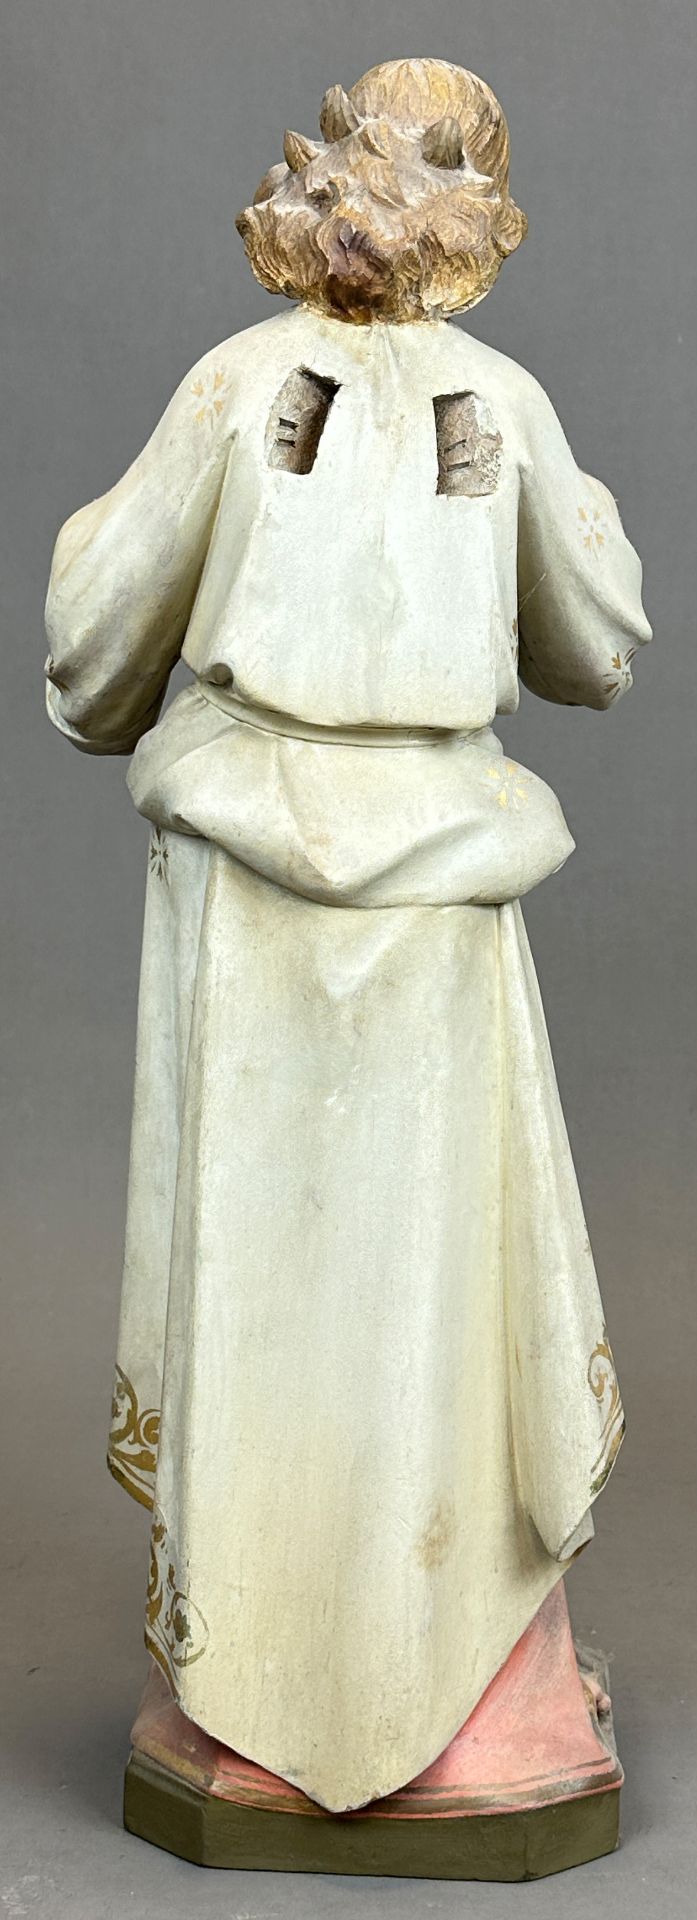 Heiligenfigur. Nazarener. 19. Jahrhundert. Deutschland. - Bild 3 aus 10